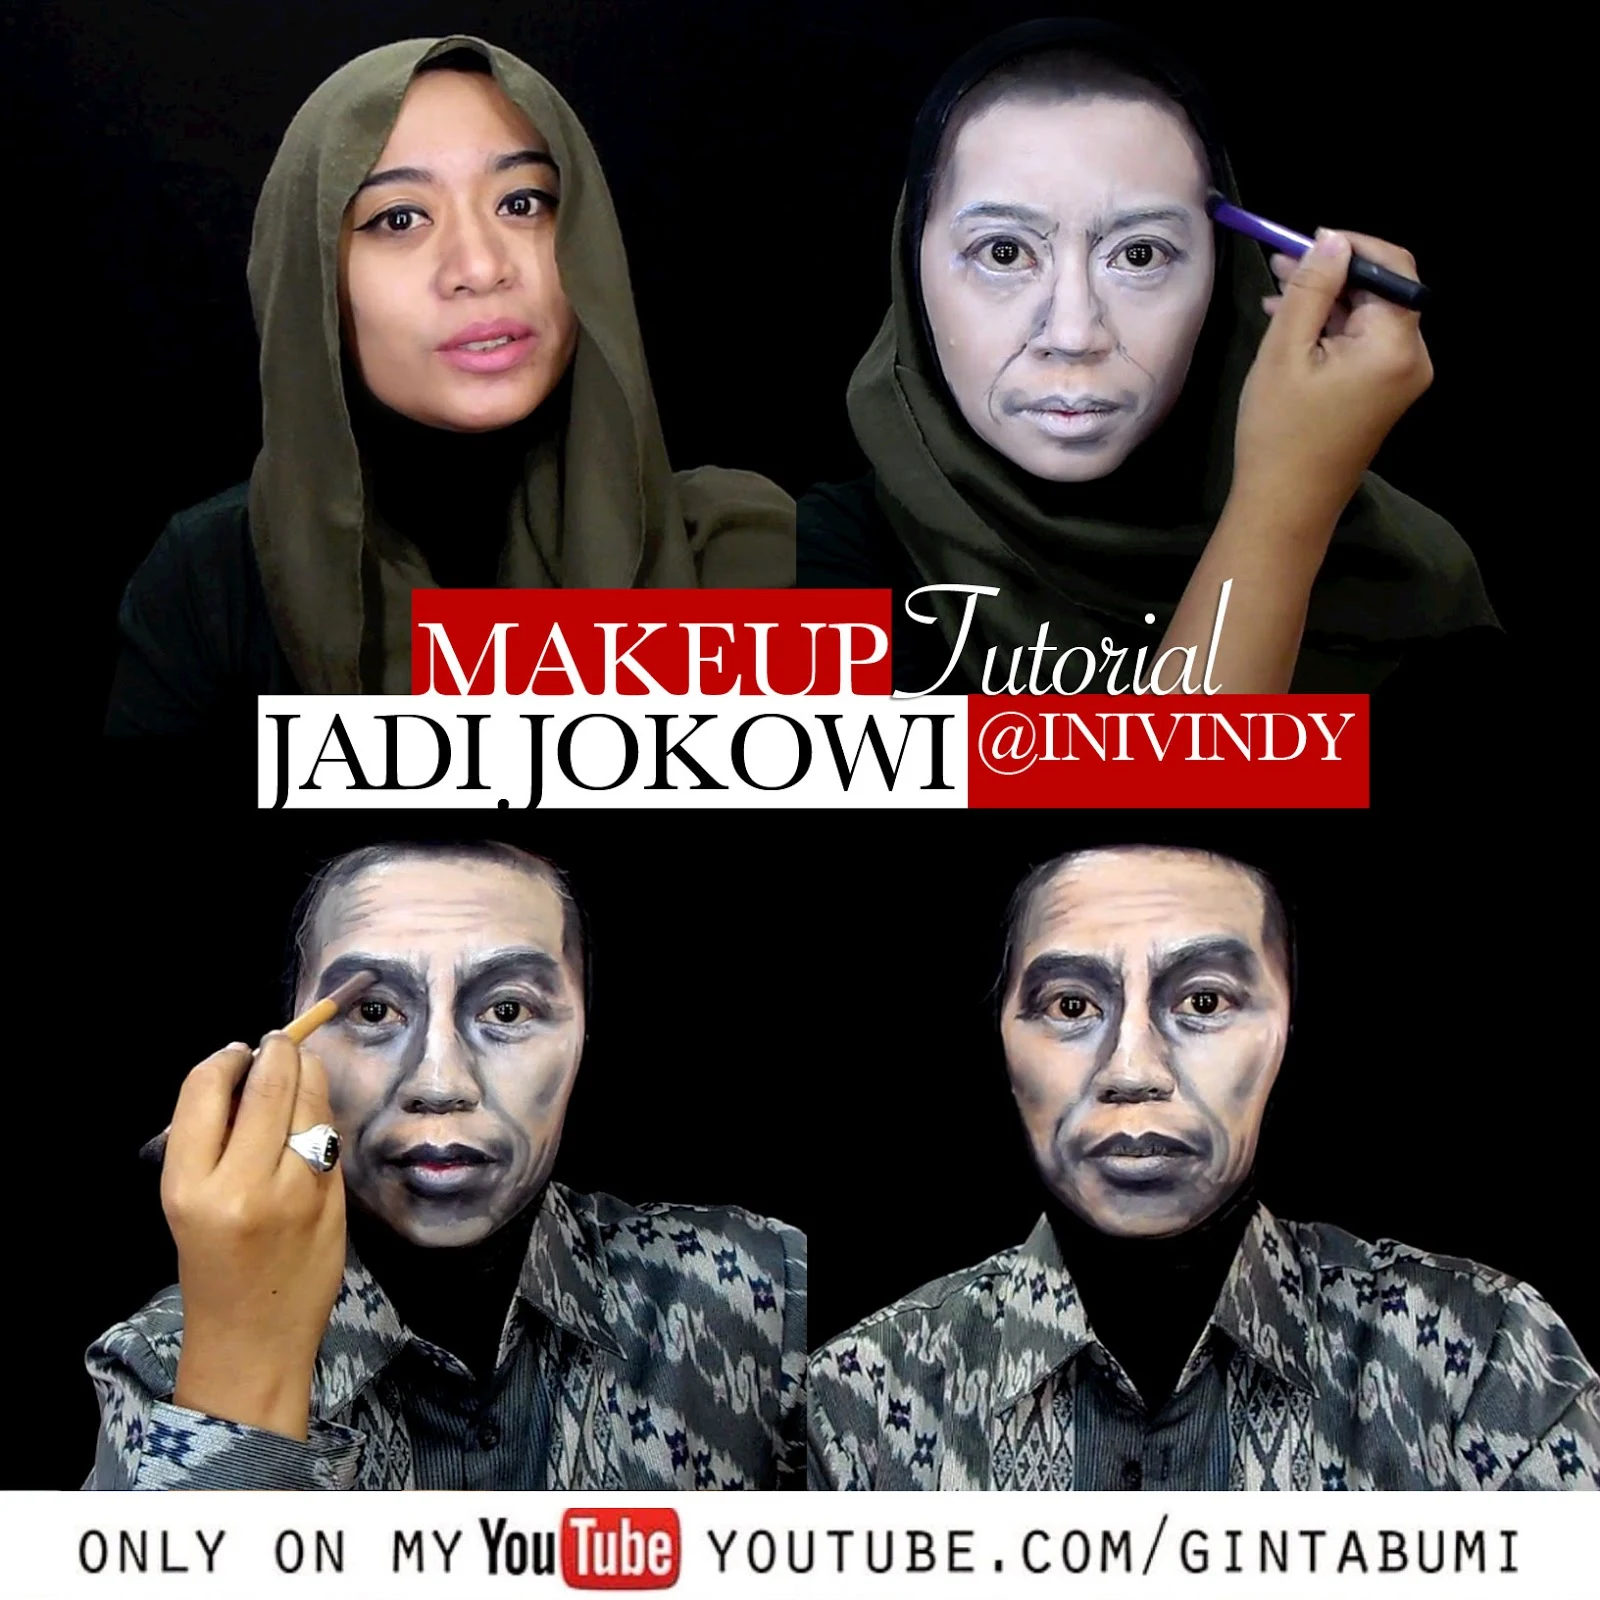 Ini Vindy Yang Ajaib Tutorial Makeup Jadi Jokowi Dan Bung Karno